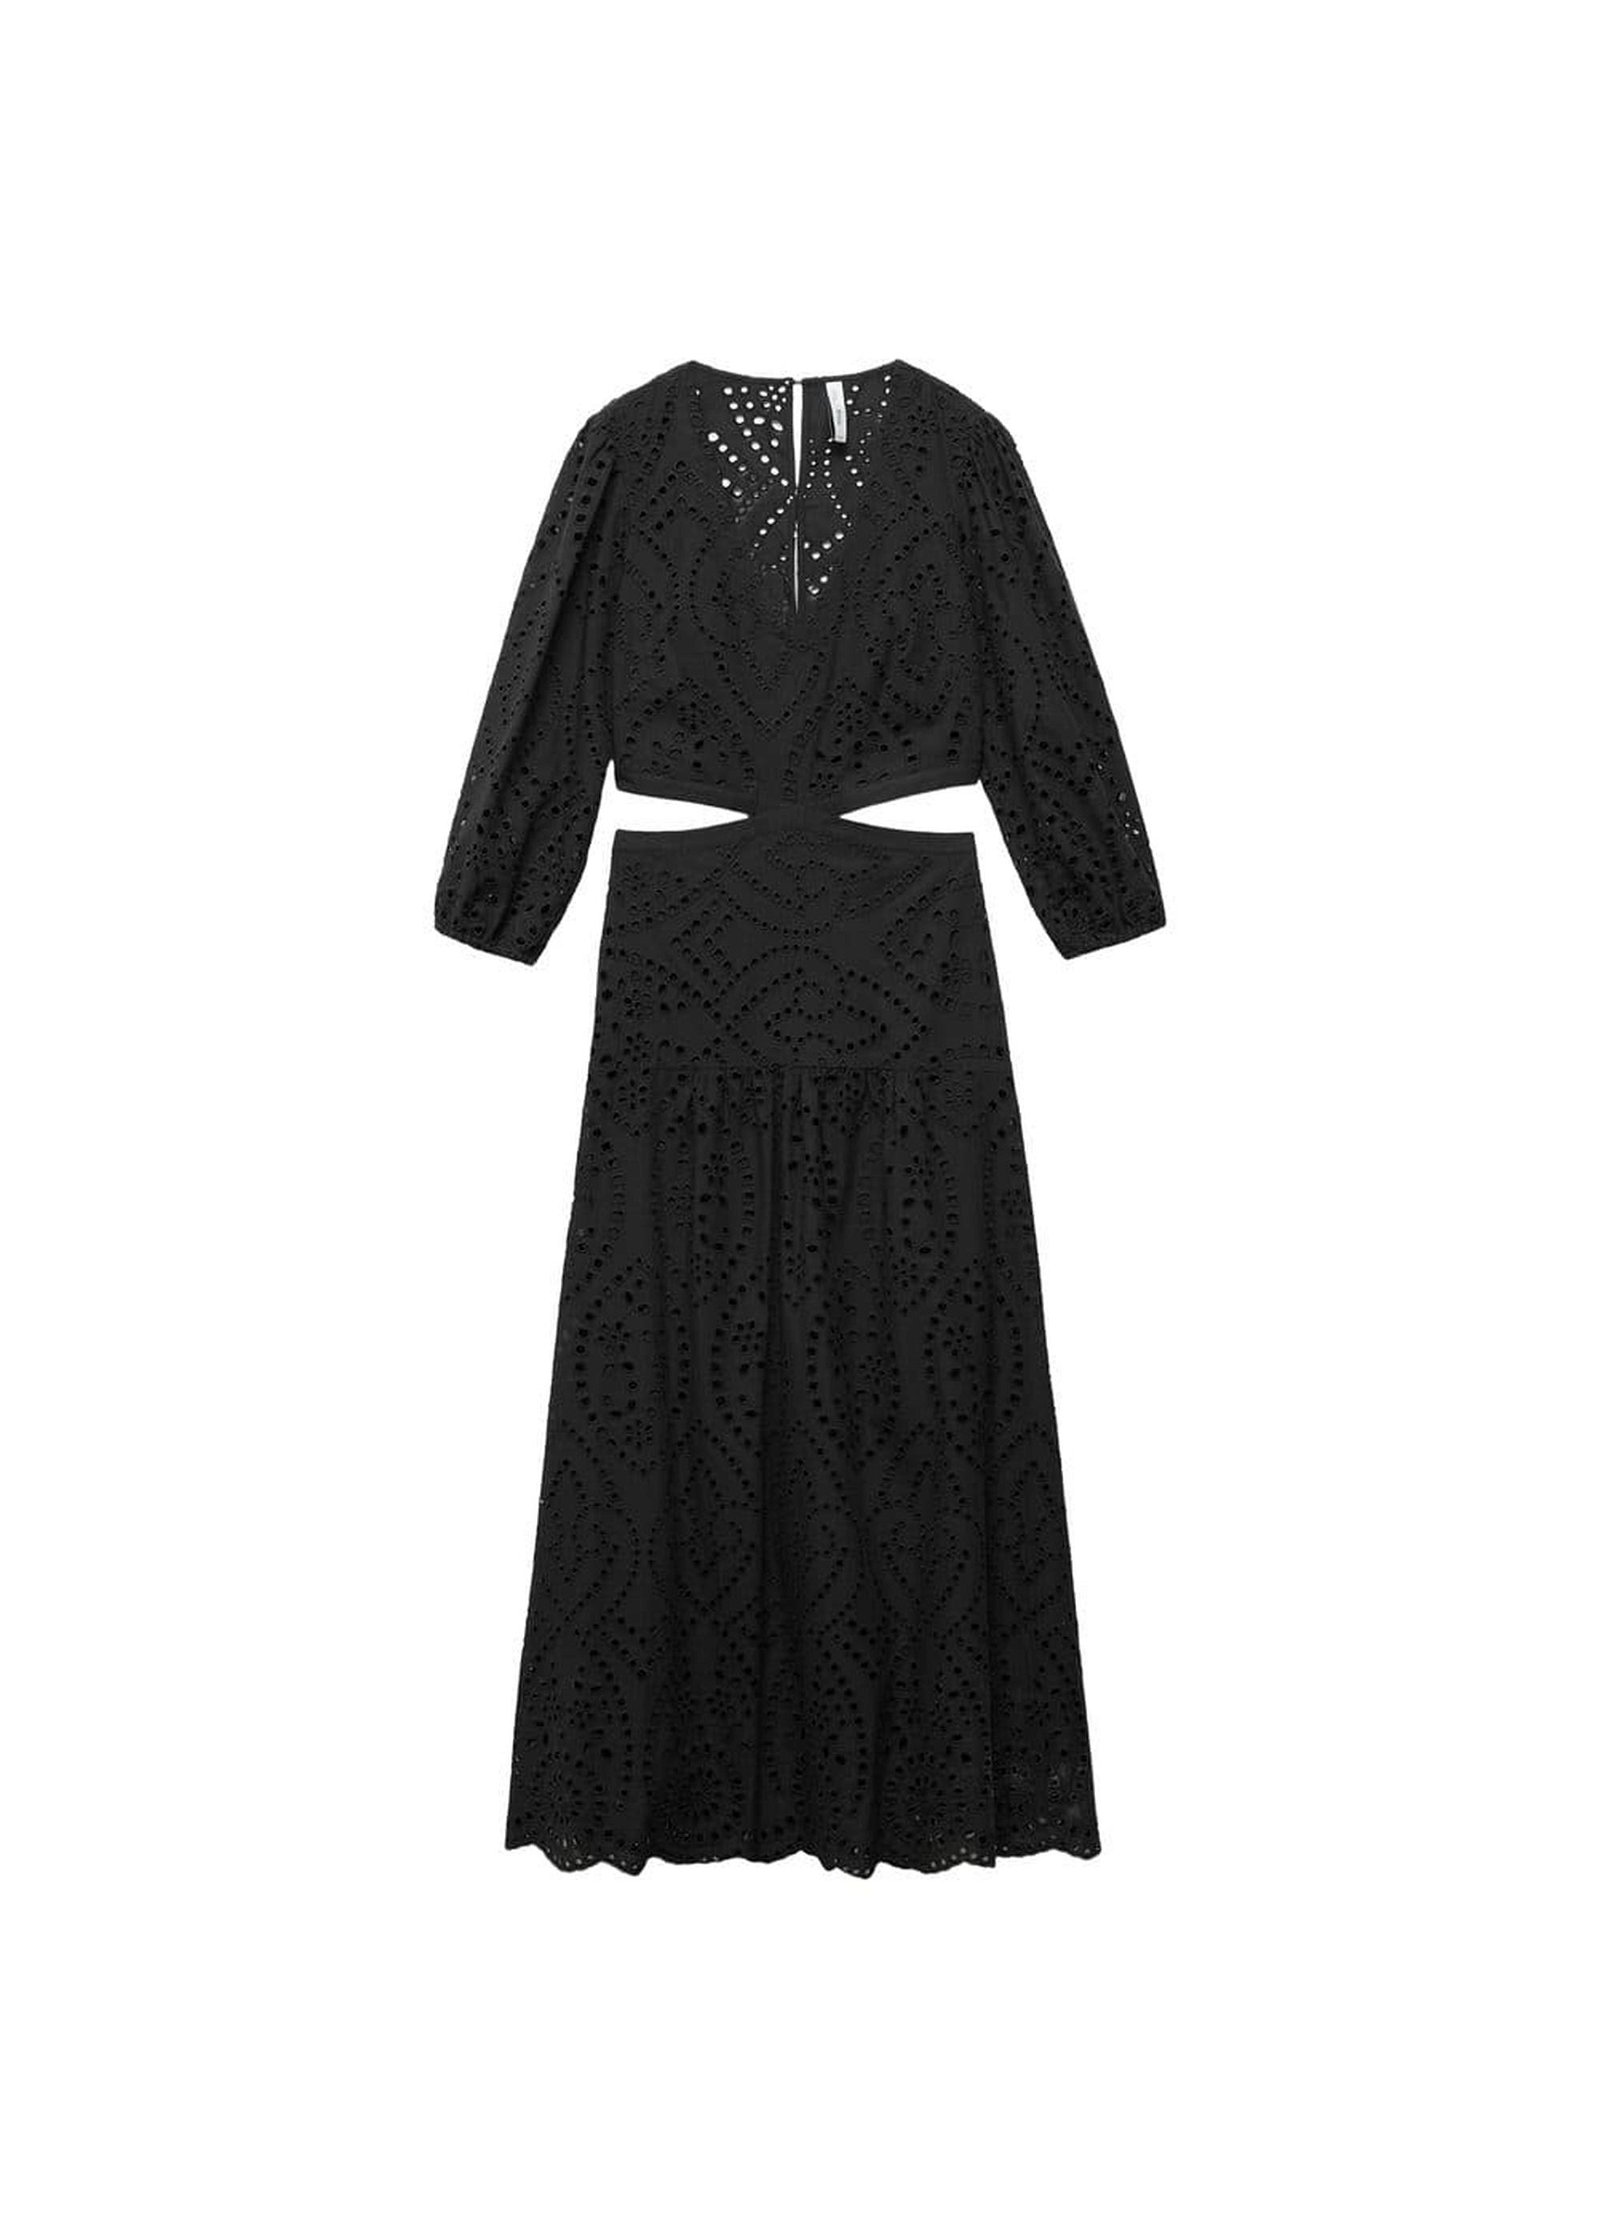 Mango Kadın Yırtmaçlı Işlemeli Elbise Siyah